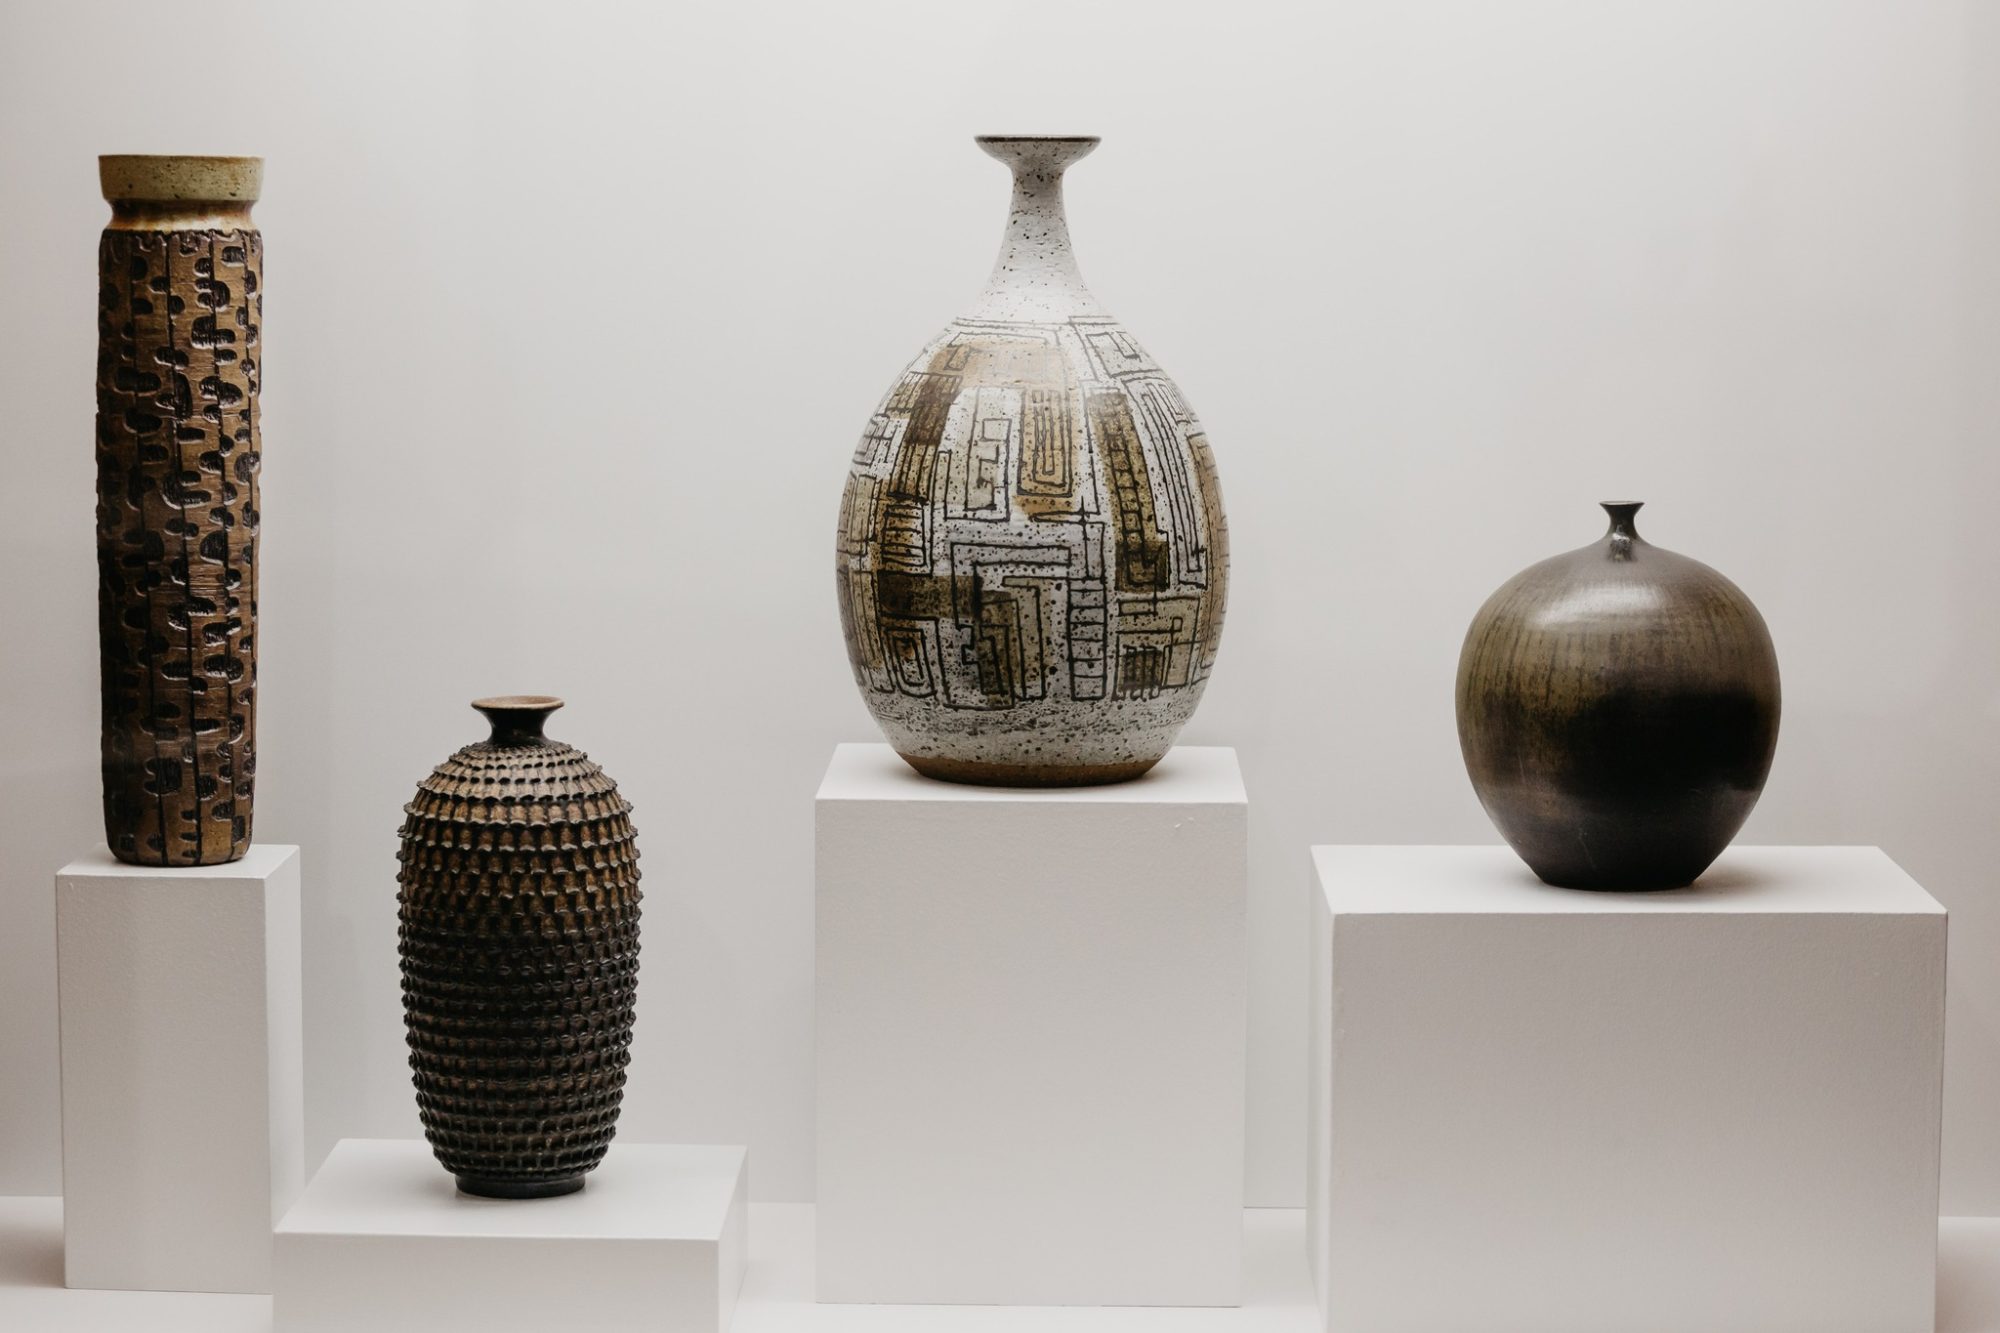 Survey of Ceramic Art